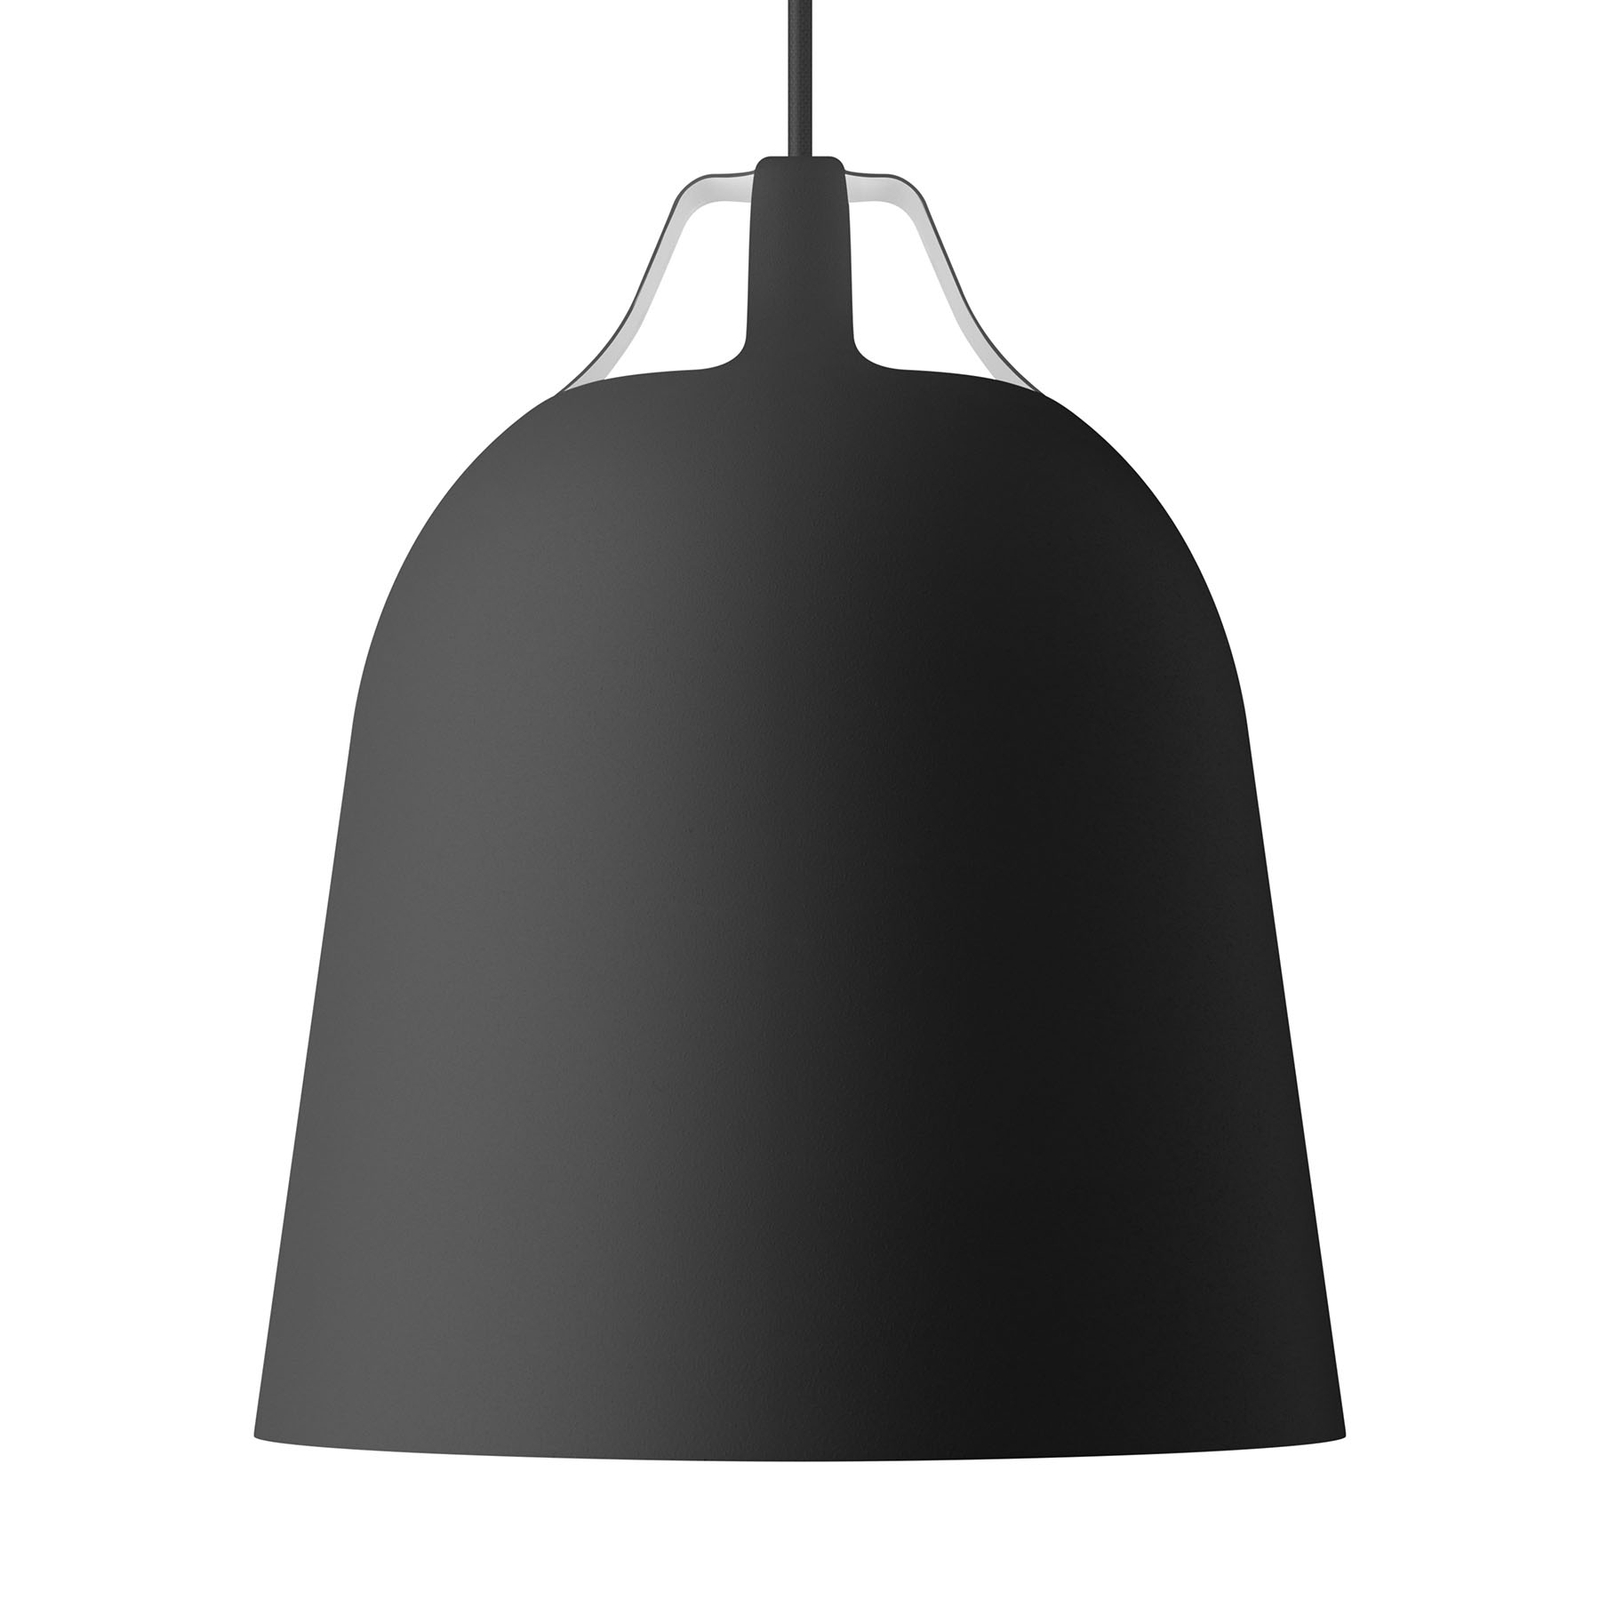 EVA Solo Clover hanglamp Ø 21cm, zwart